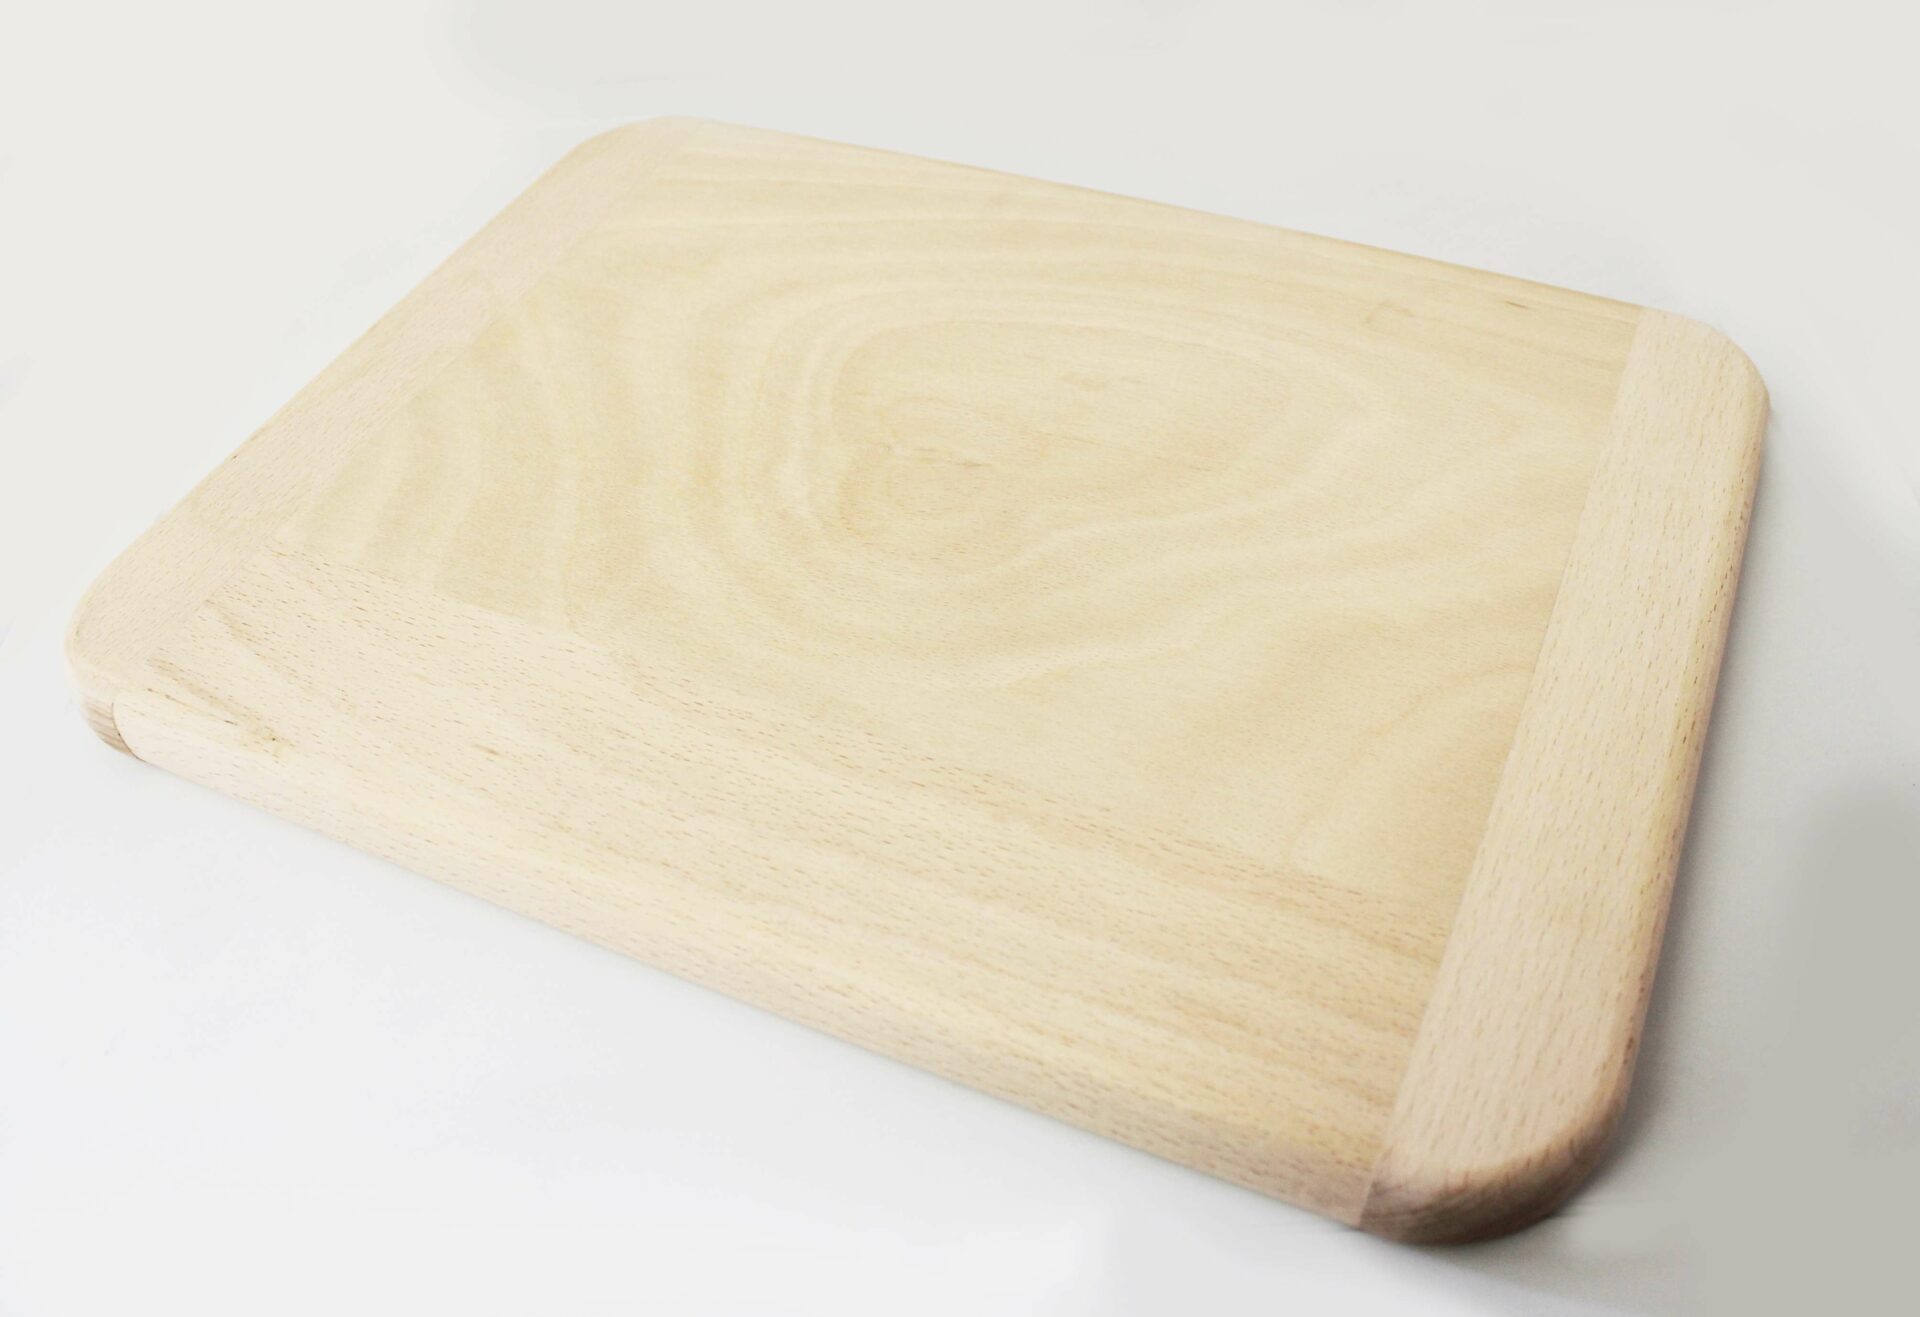 Chopping board “crossbar” Calder